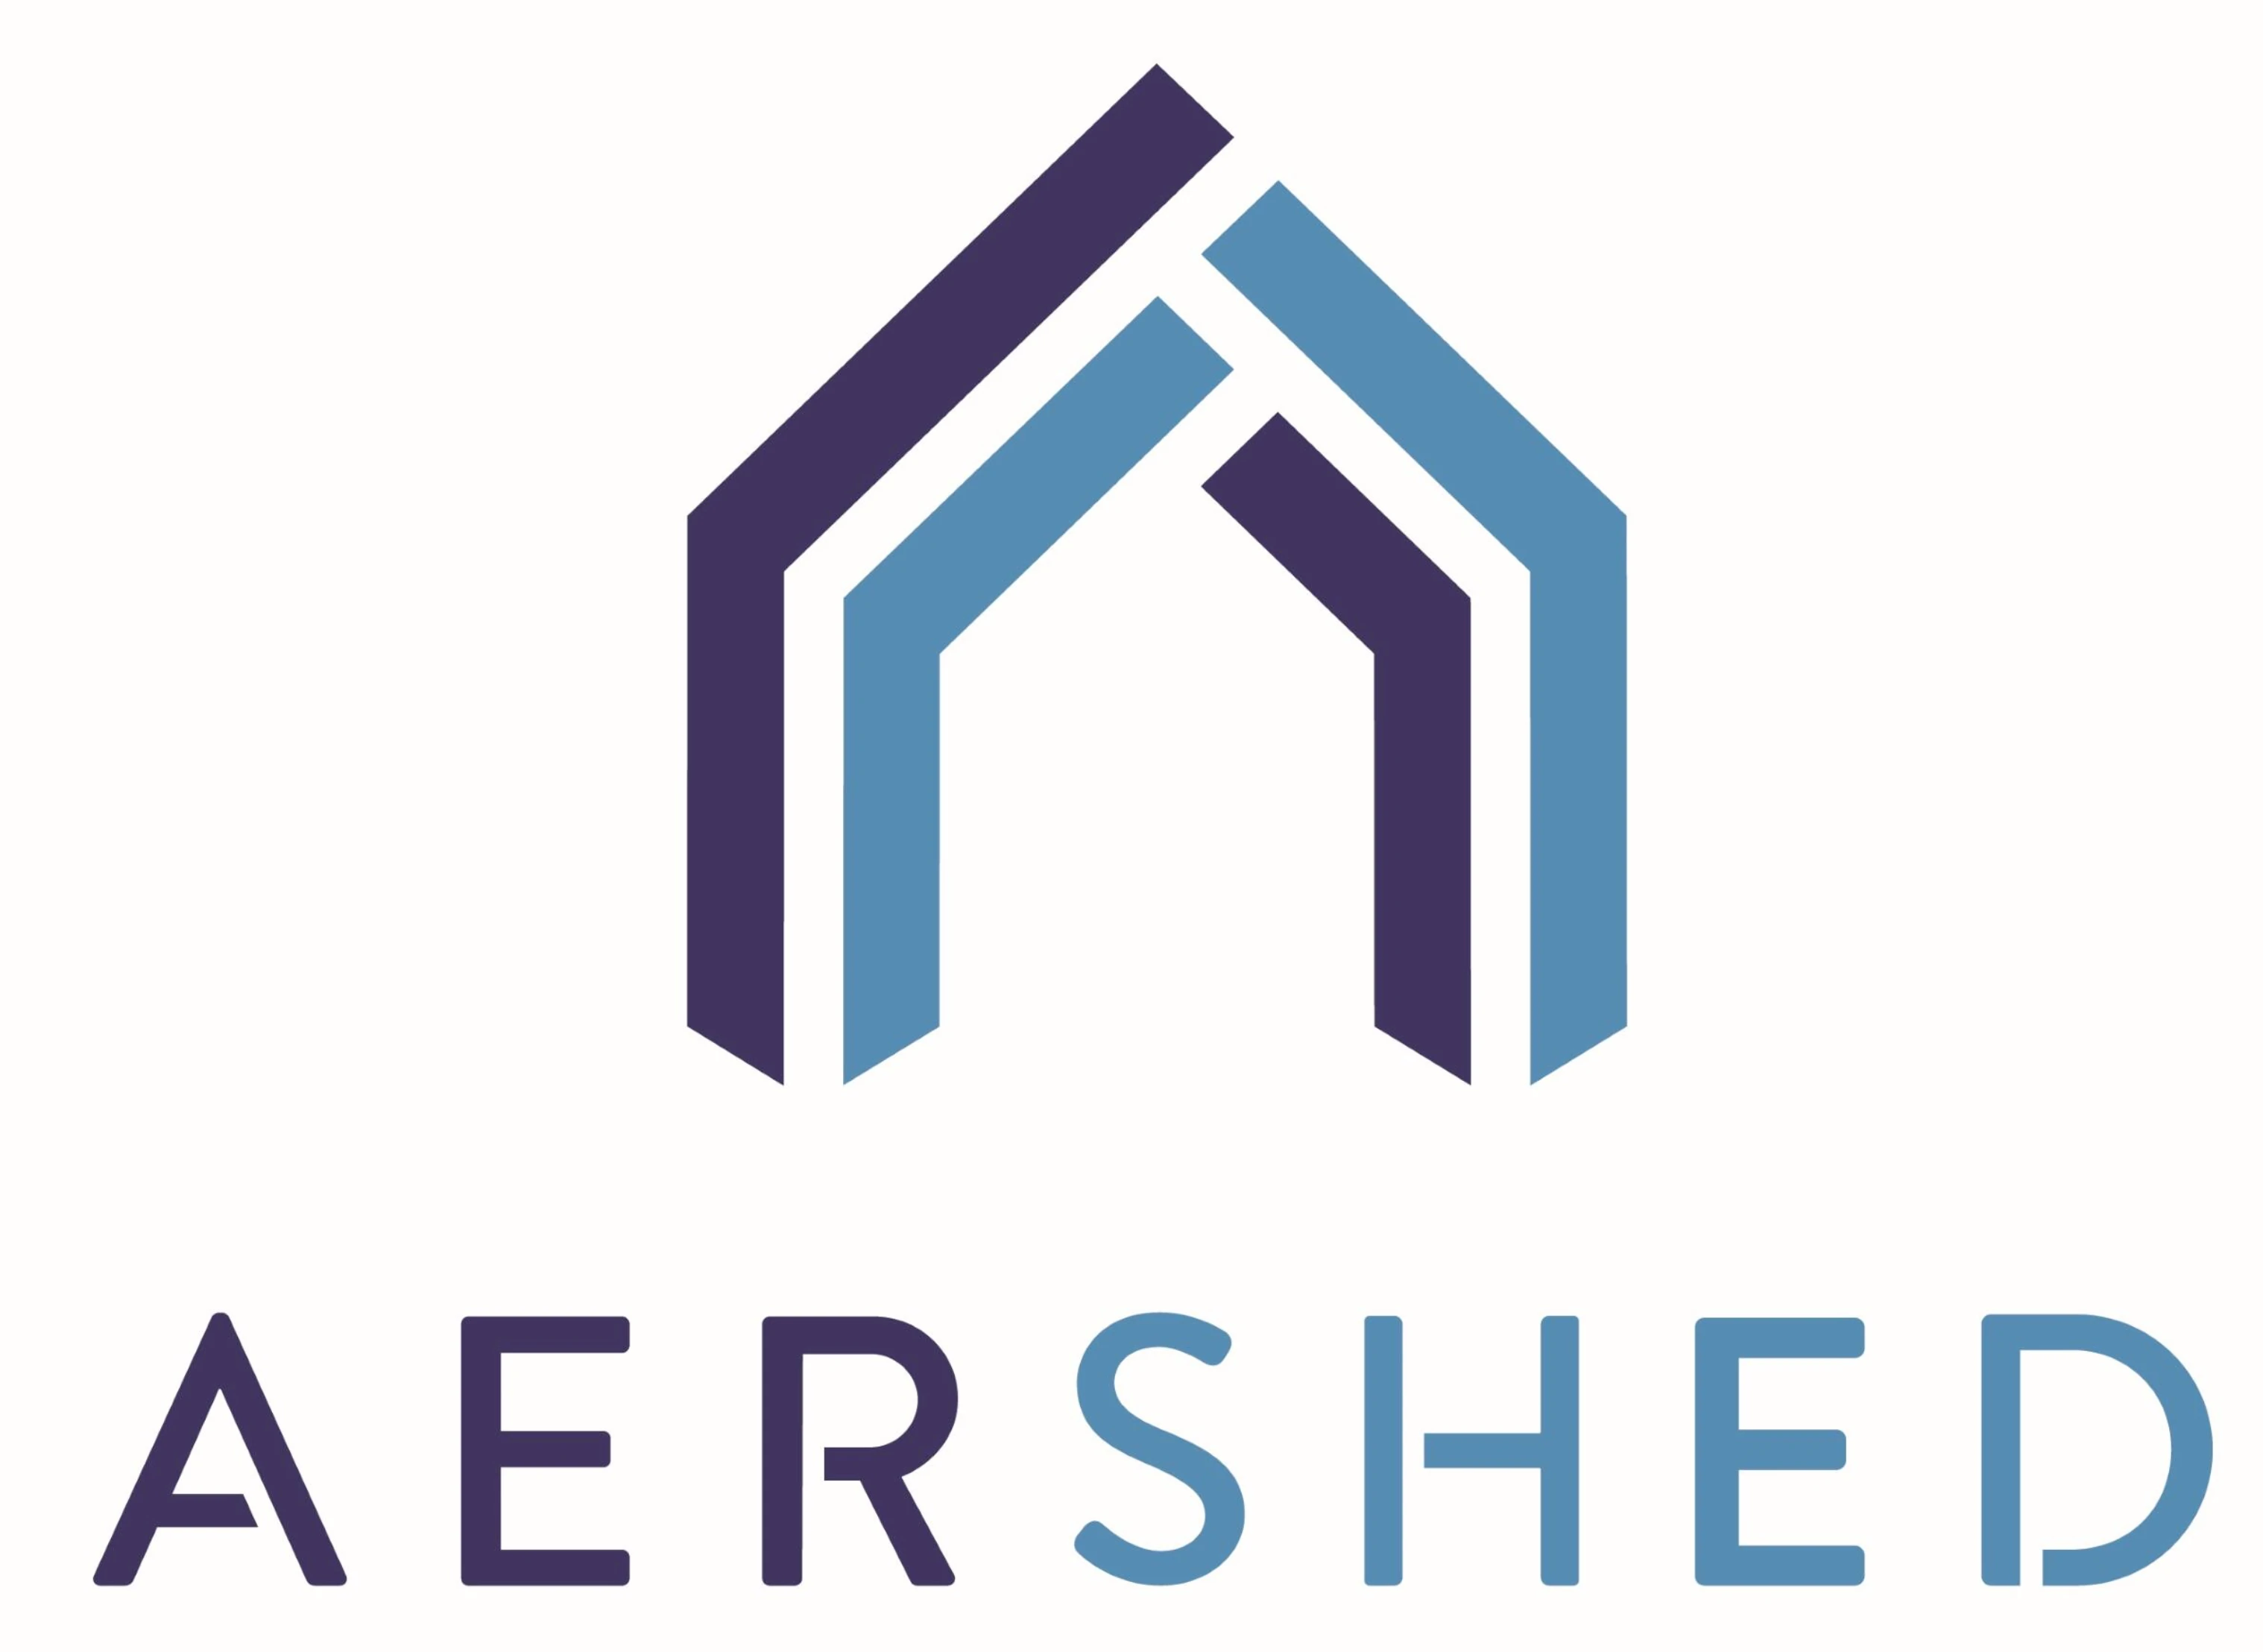 Aershed Logo